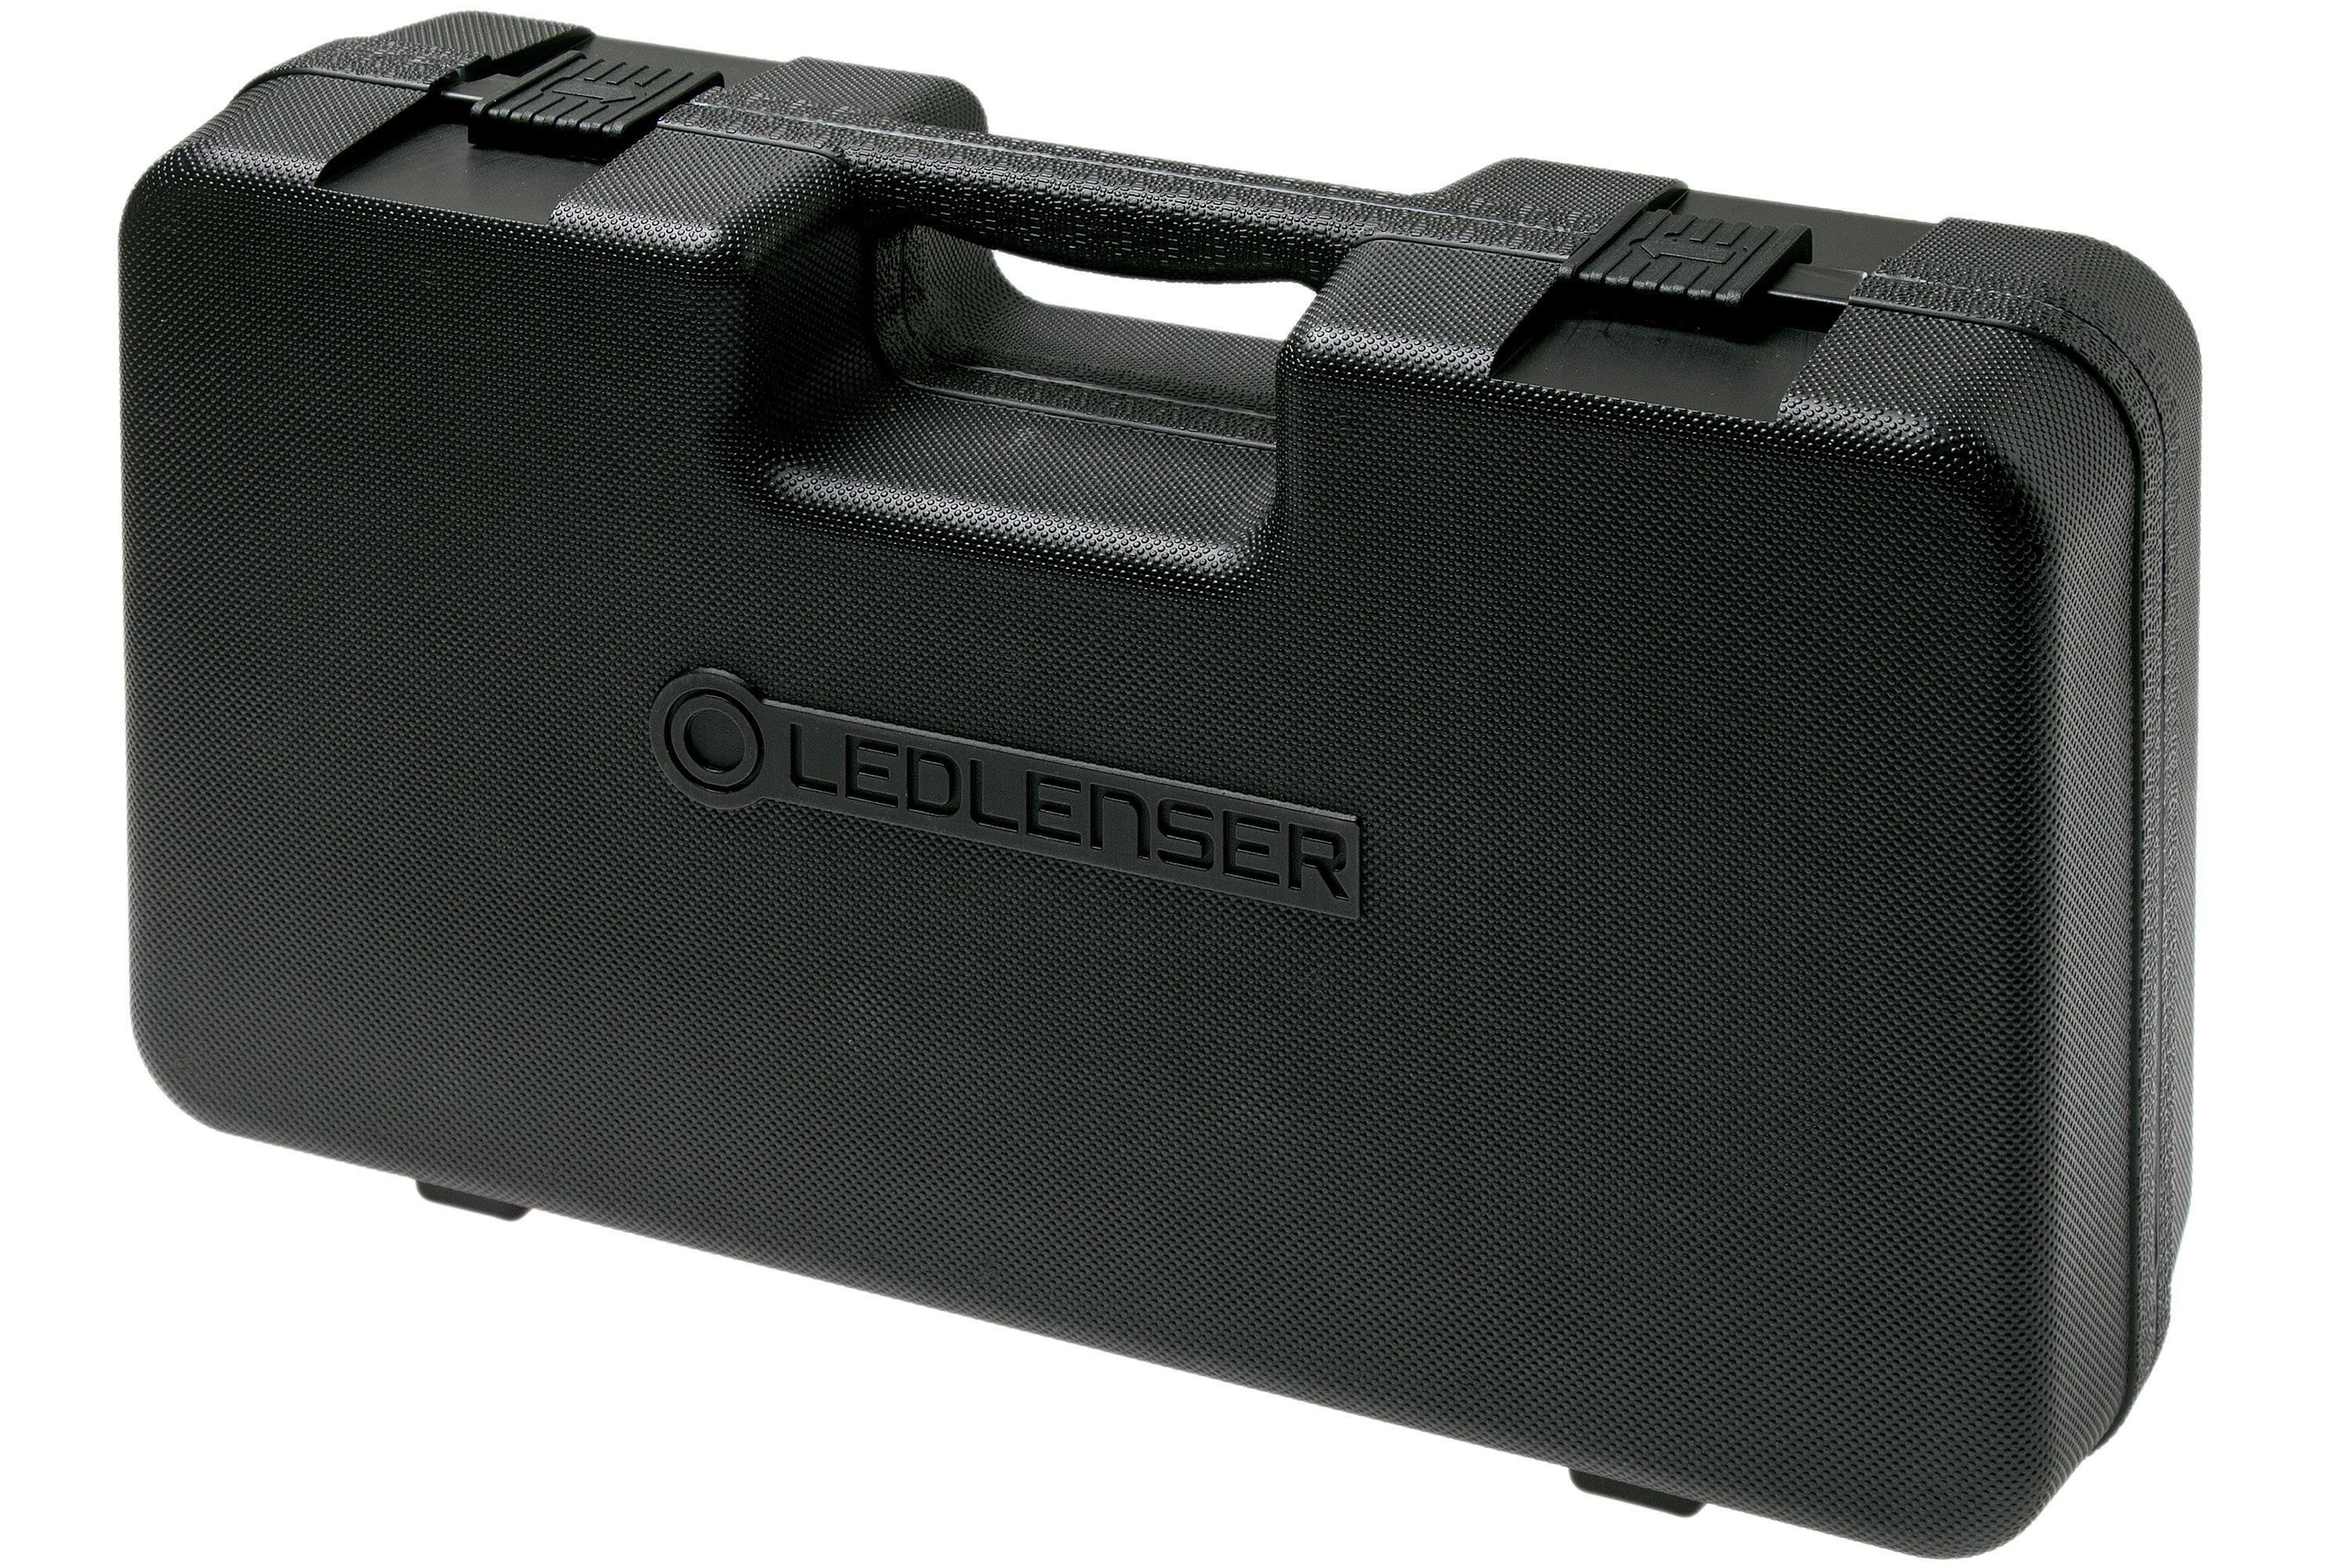 Led Lenser X21R.2 Xtreme Series